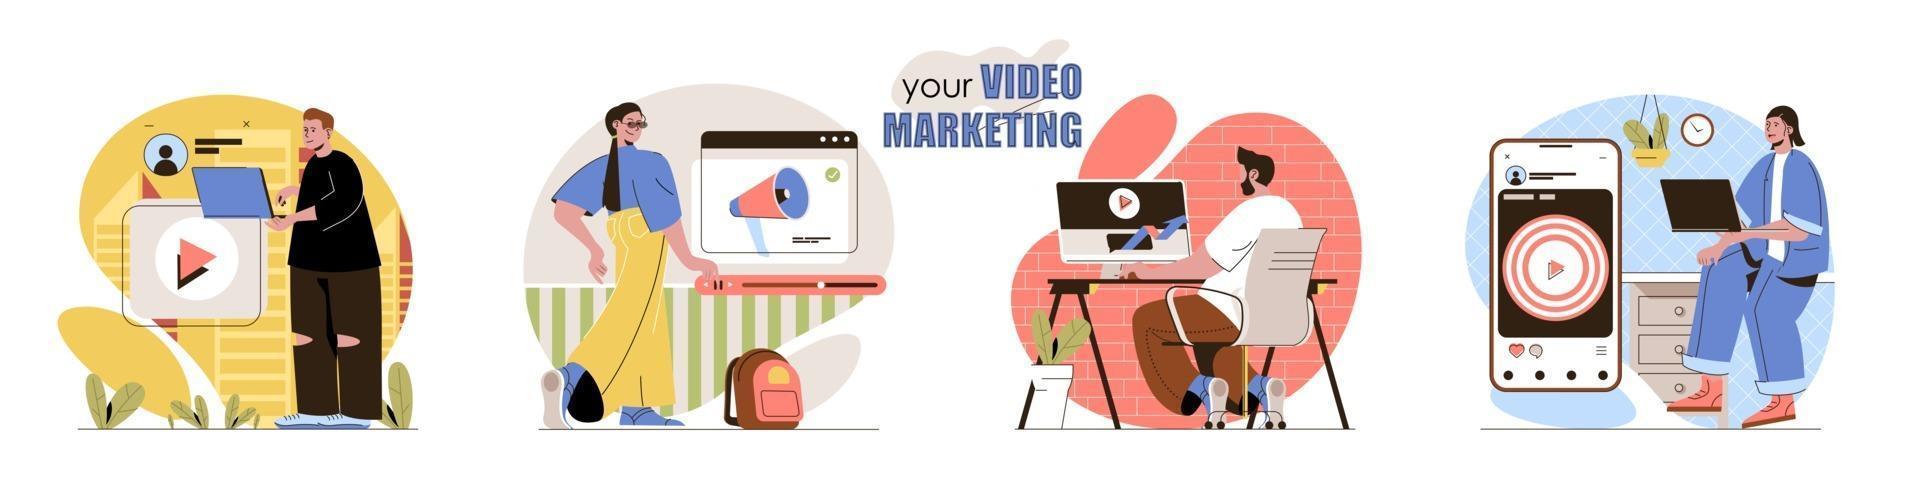 conjunto de escenas de concepto de video marketing vector